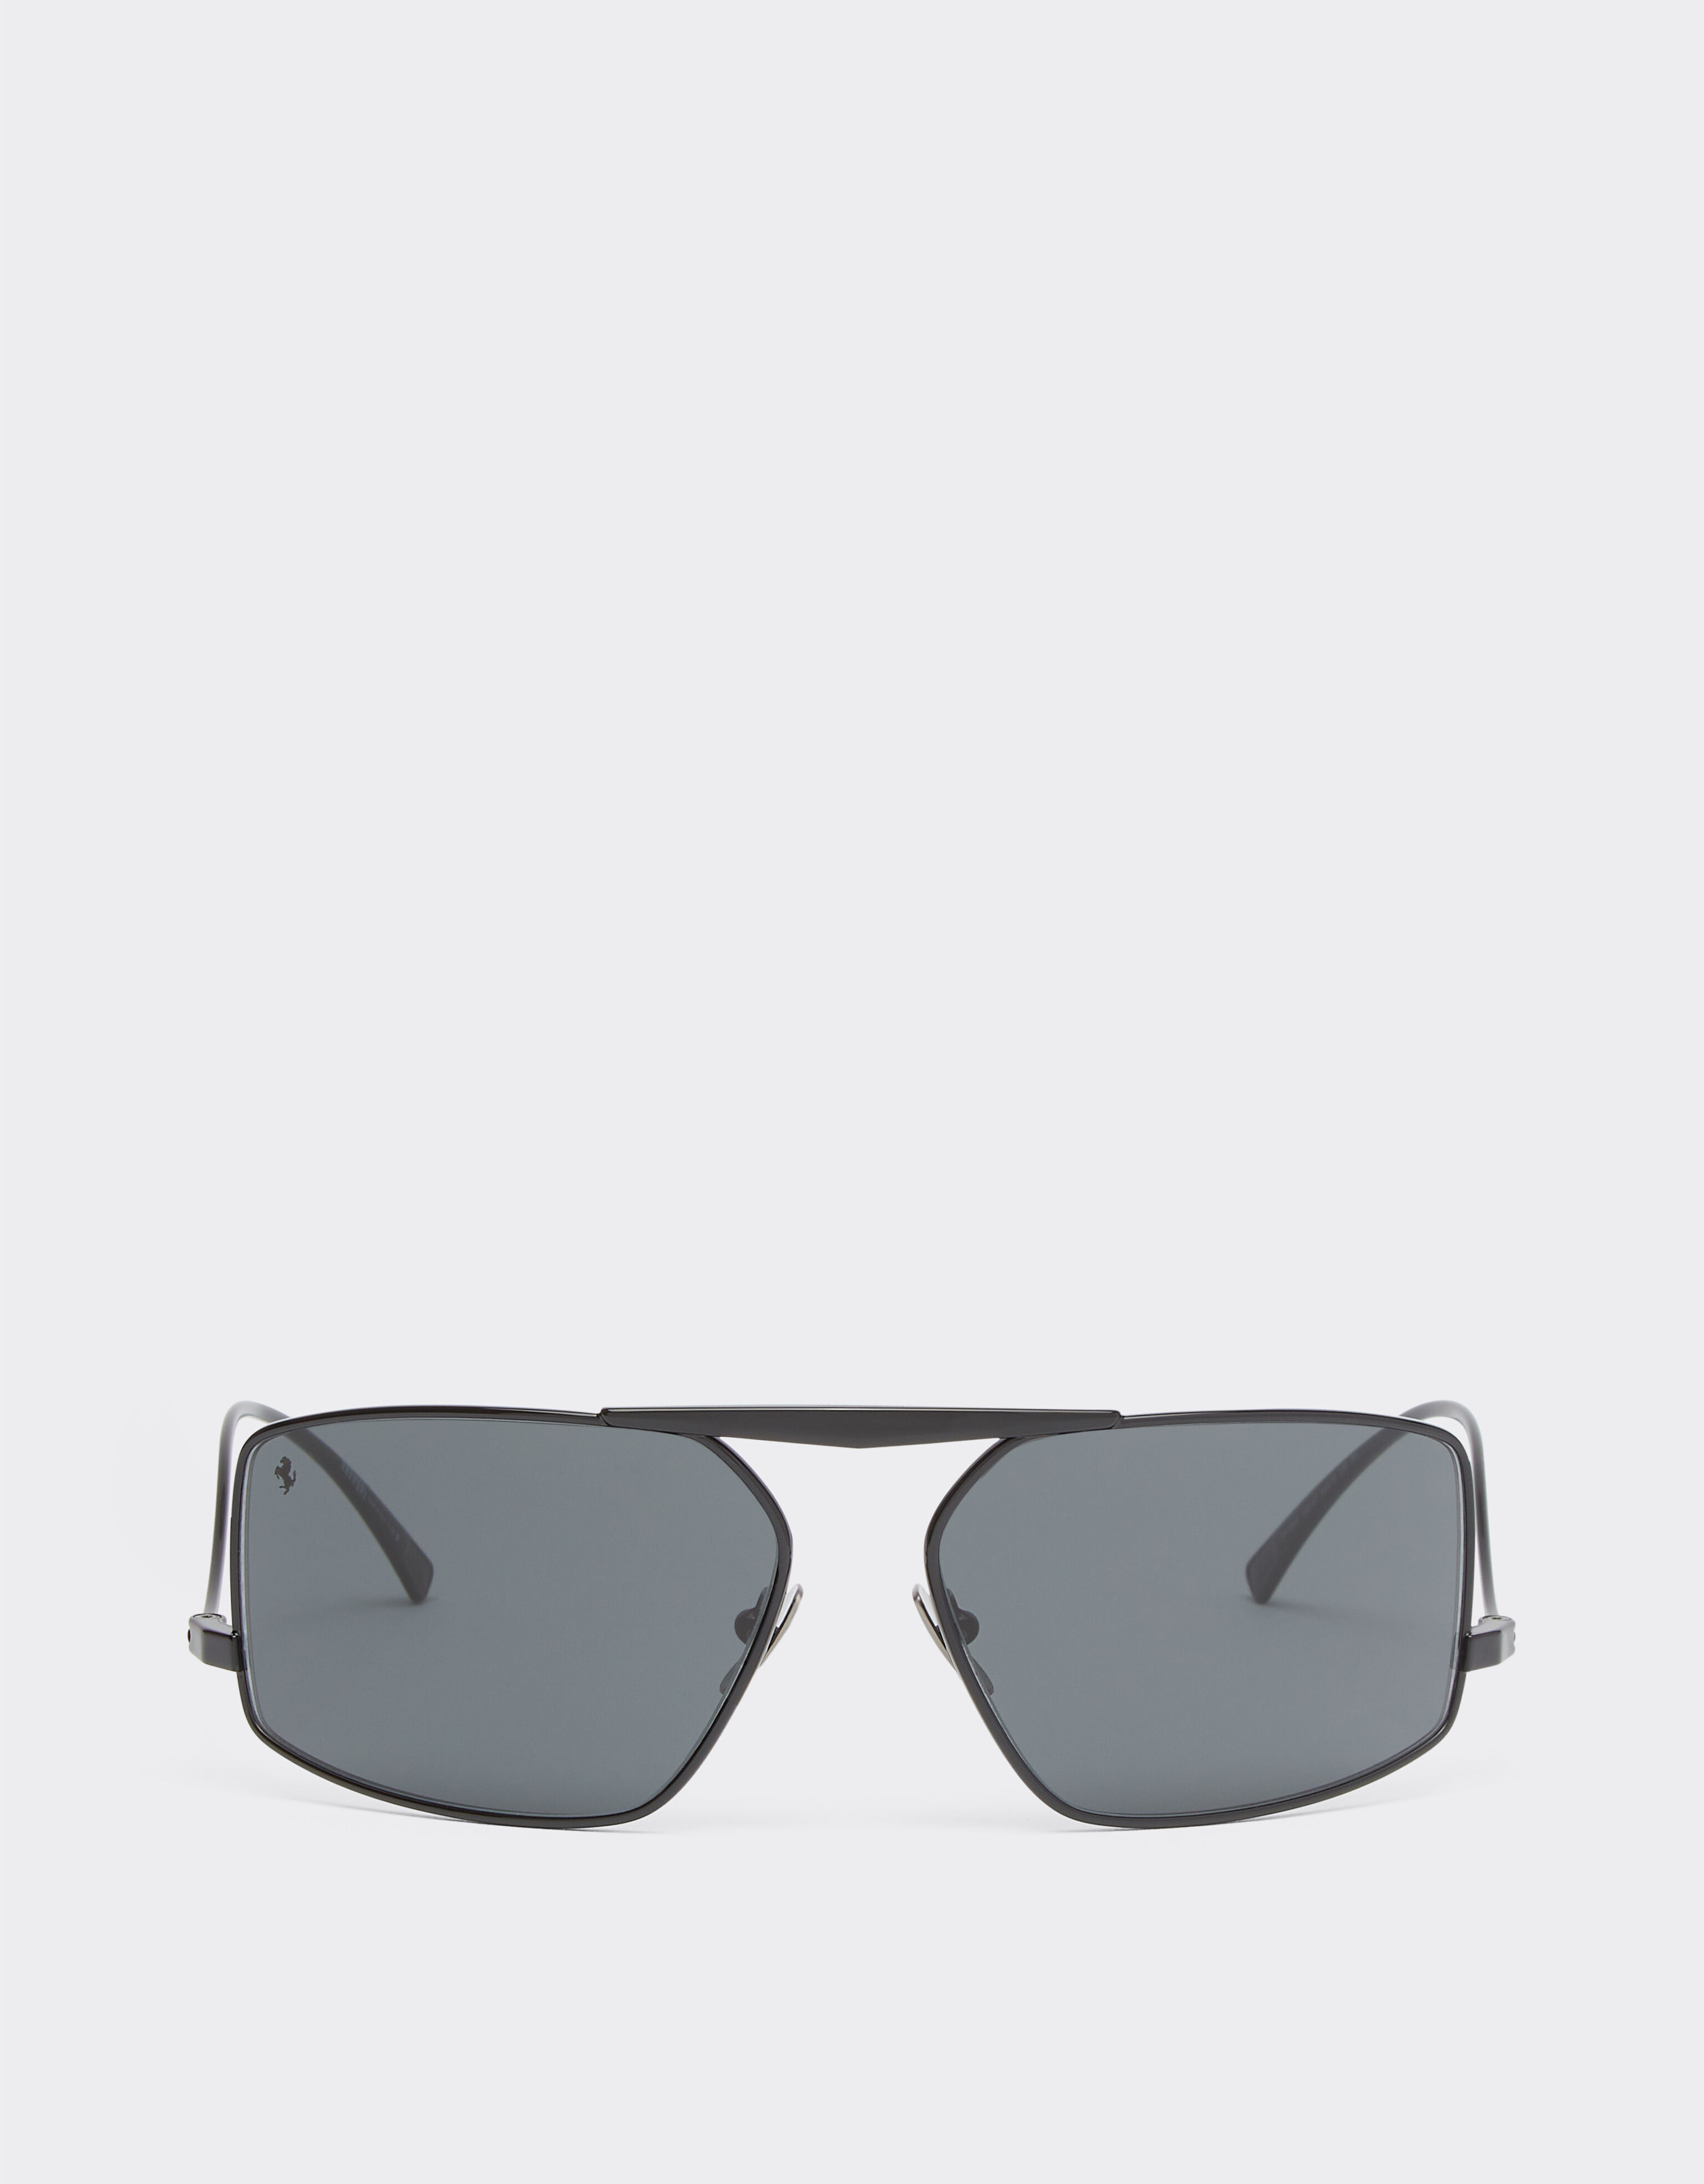 Ferrari Ferrari Sonnenbrille aus schwarzem Metall mit grauen Gläsern Schwarz F1201f